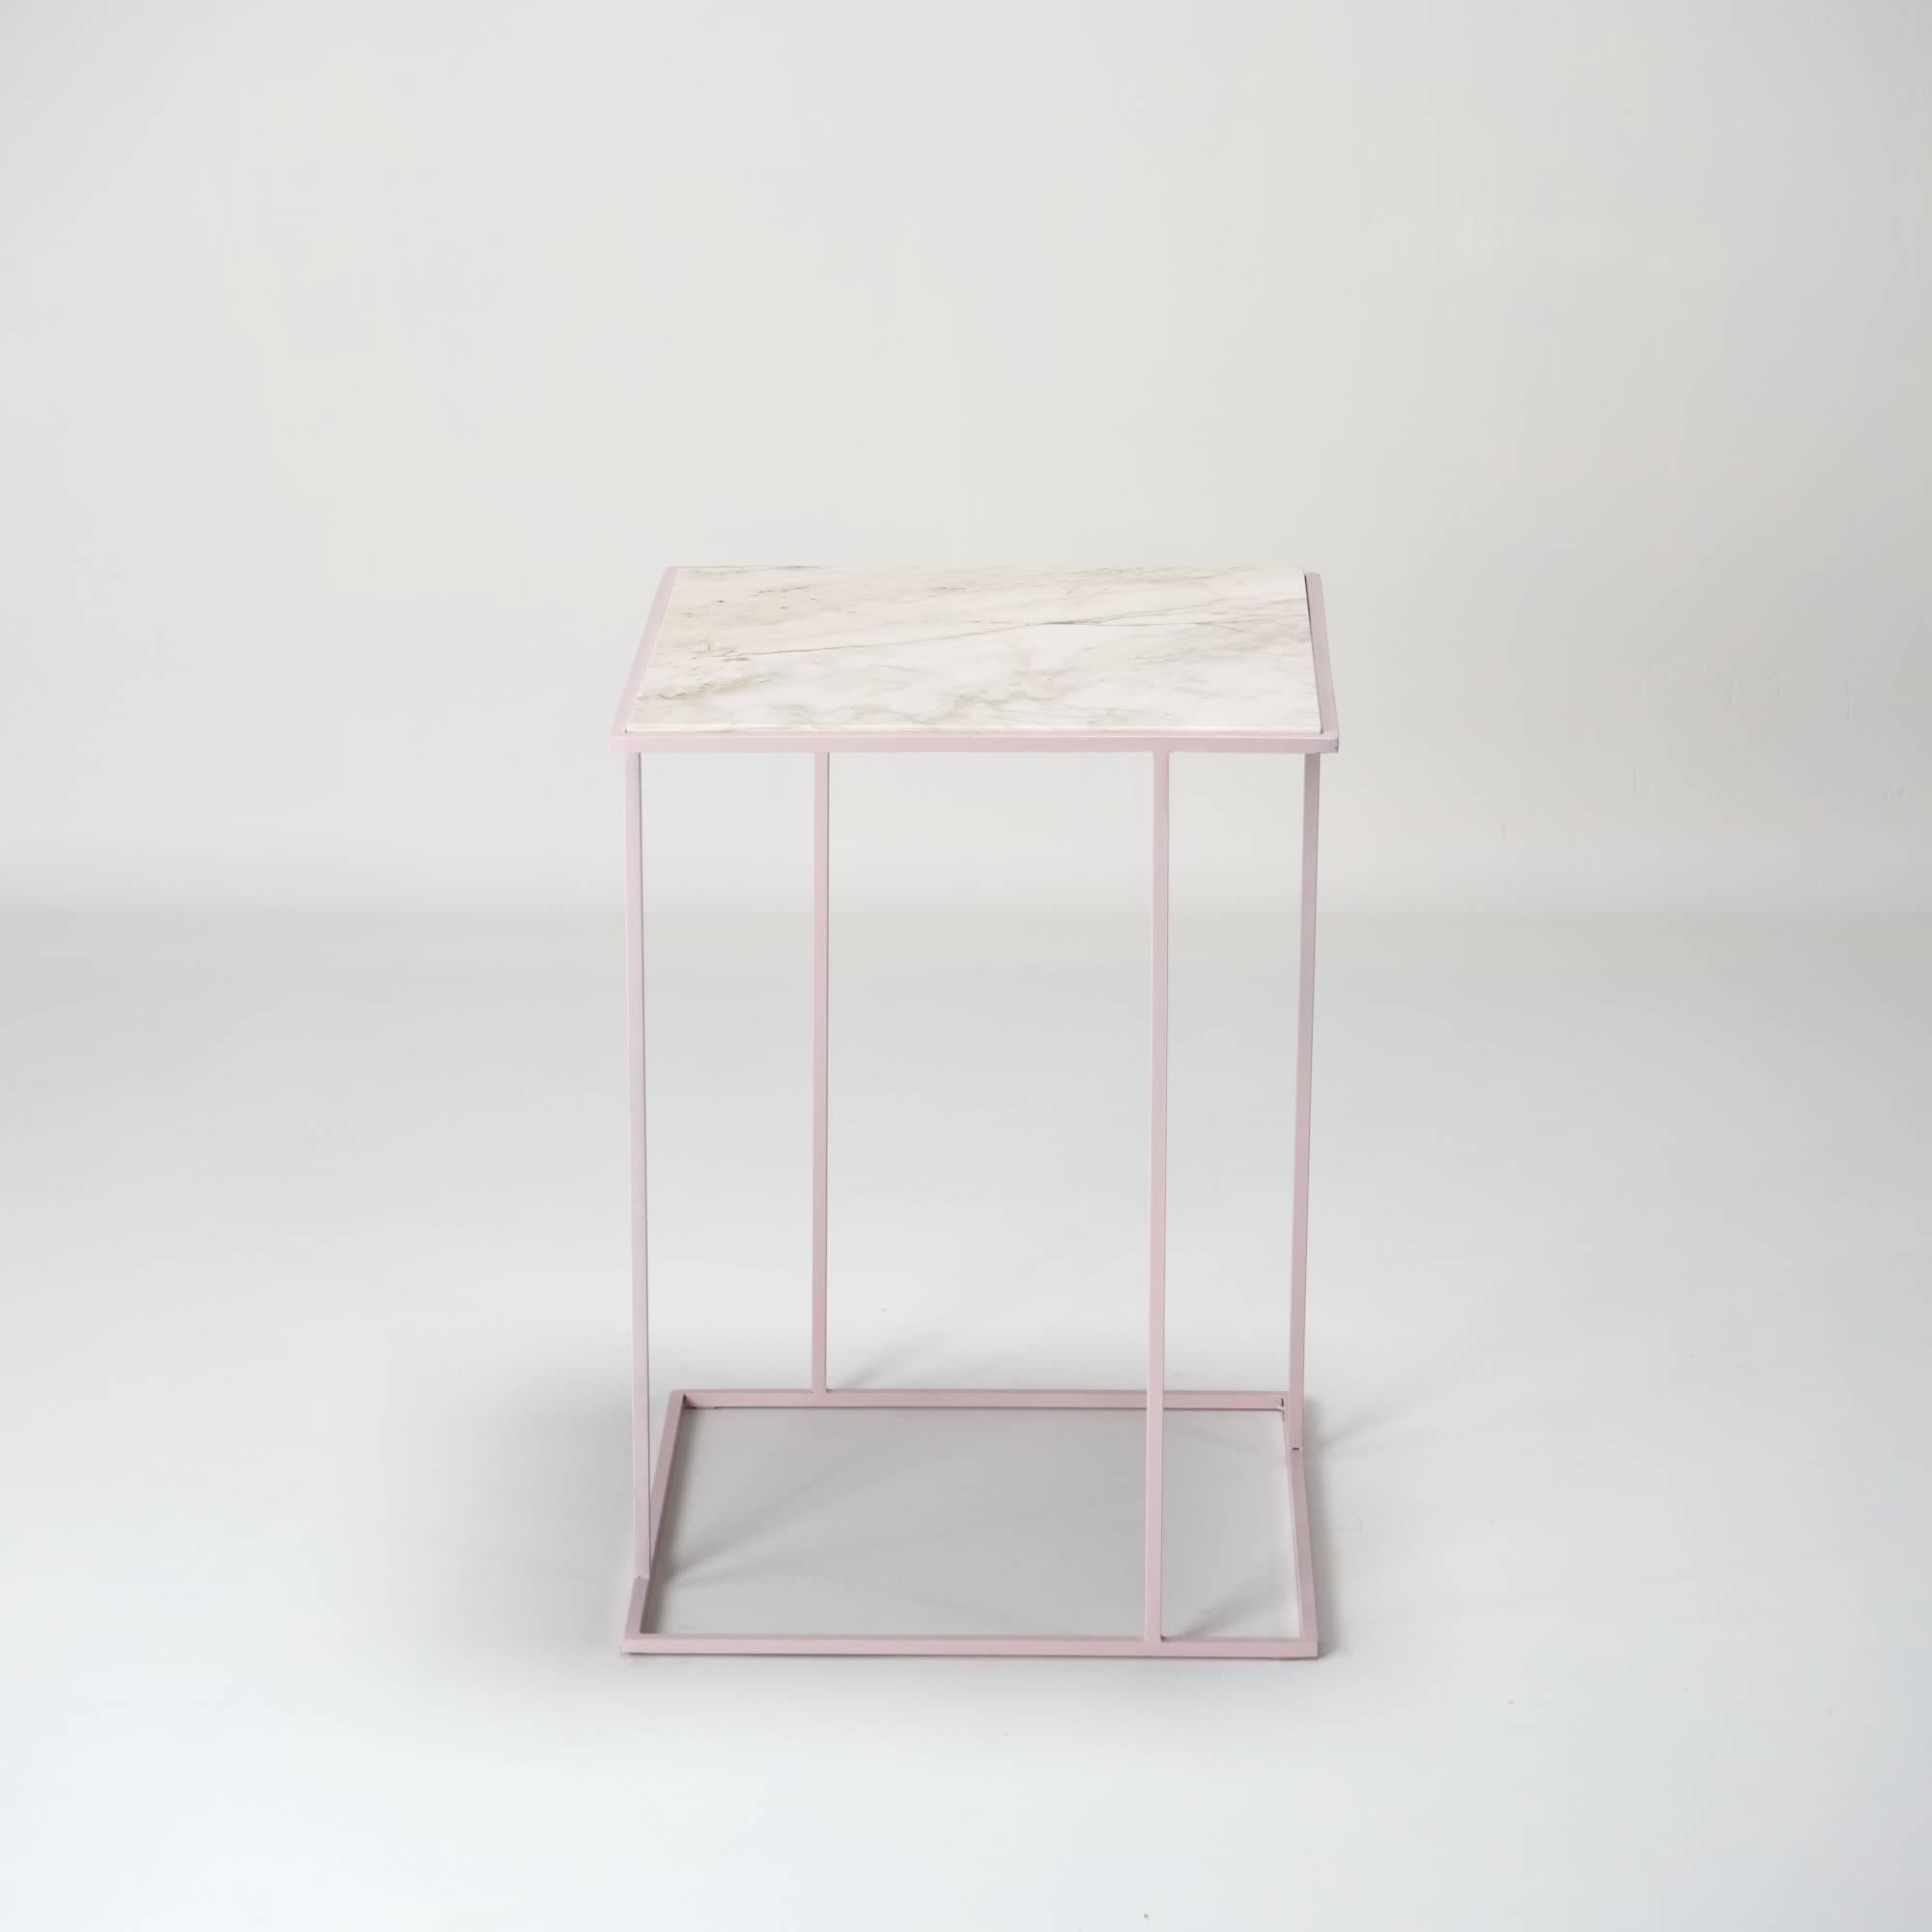 FramE est une table d'appoint conçue dans l'intention de valoriser le plateau en marbre/pierre. 

La structure des pieds est conçue comme un cadre 3D inspiré des peintures de Piet Mondrian.

Il existe différentes variétés. Dans ce cas, nous